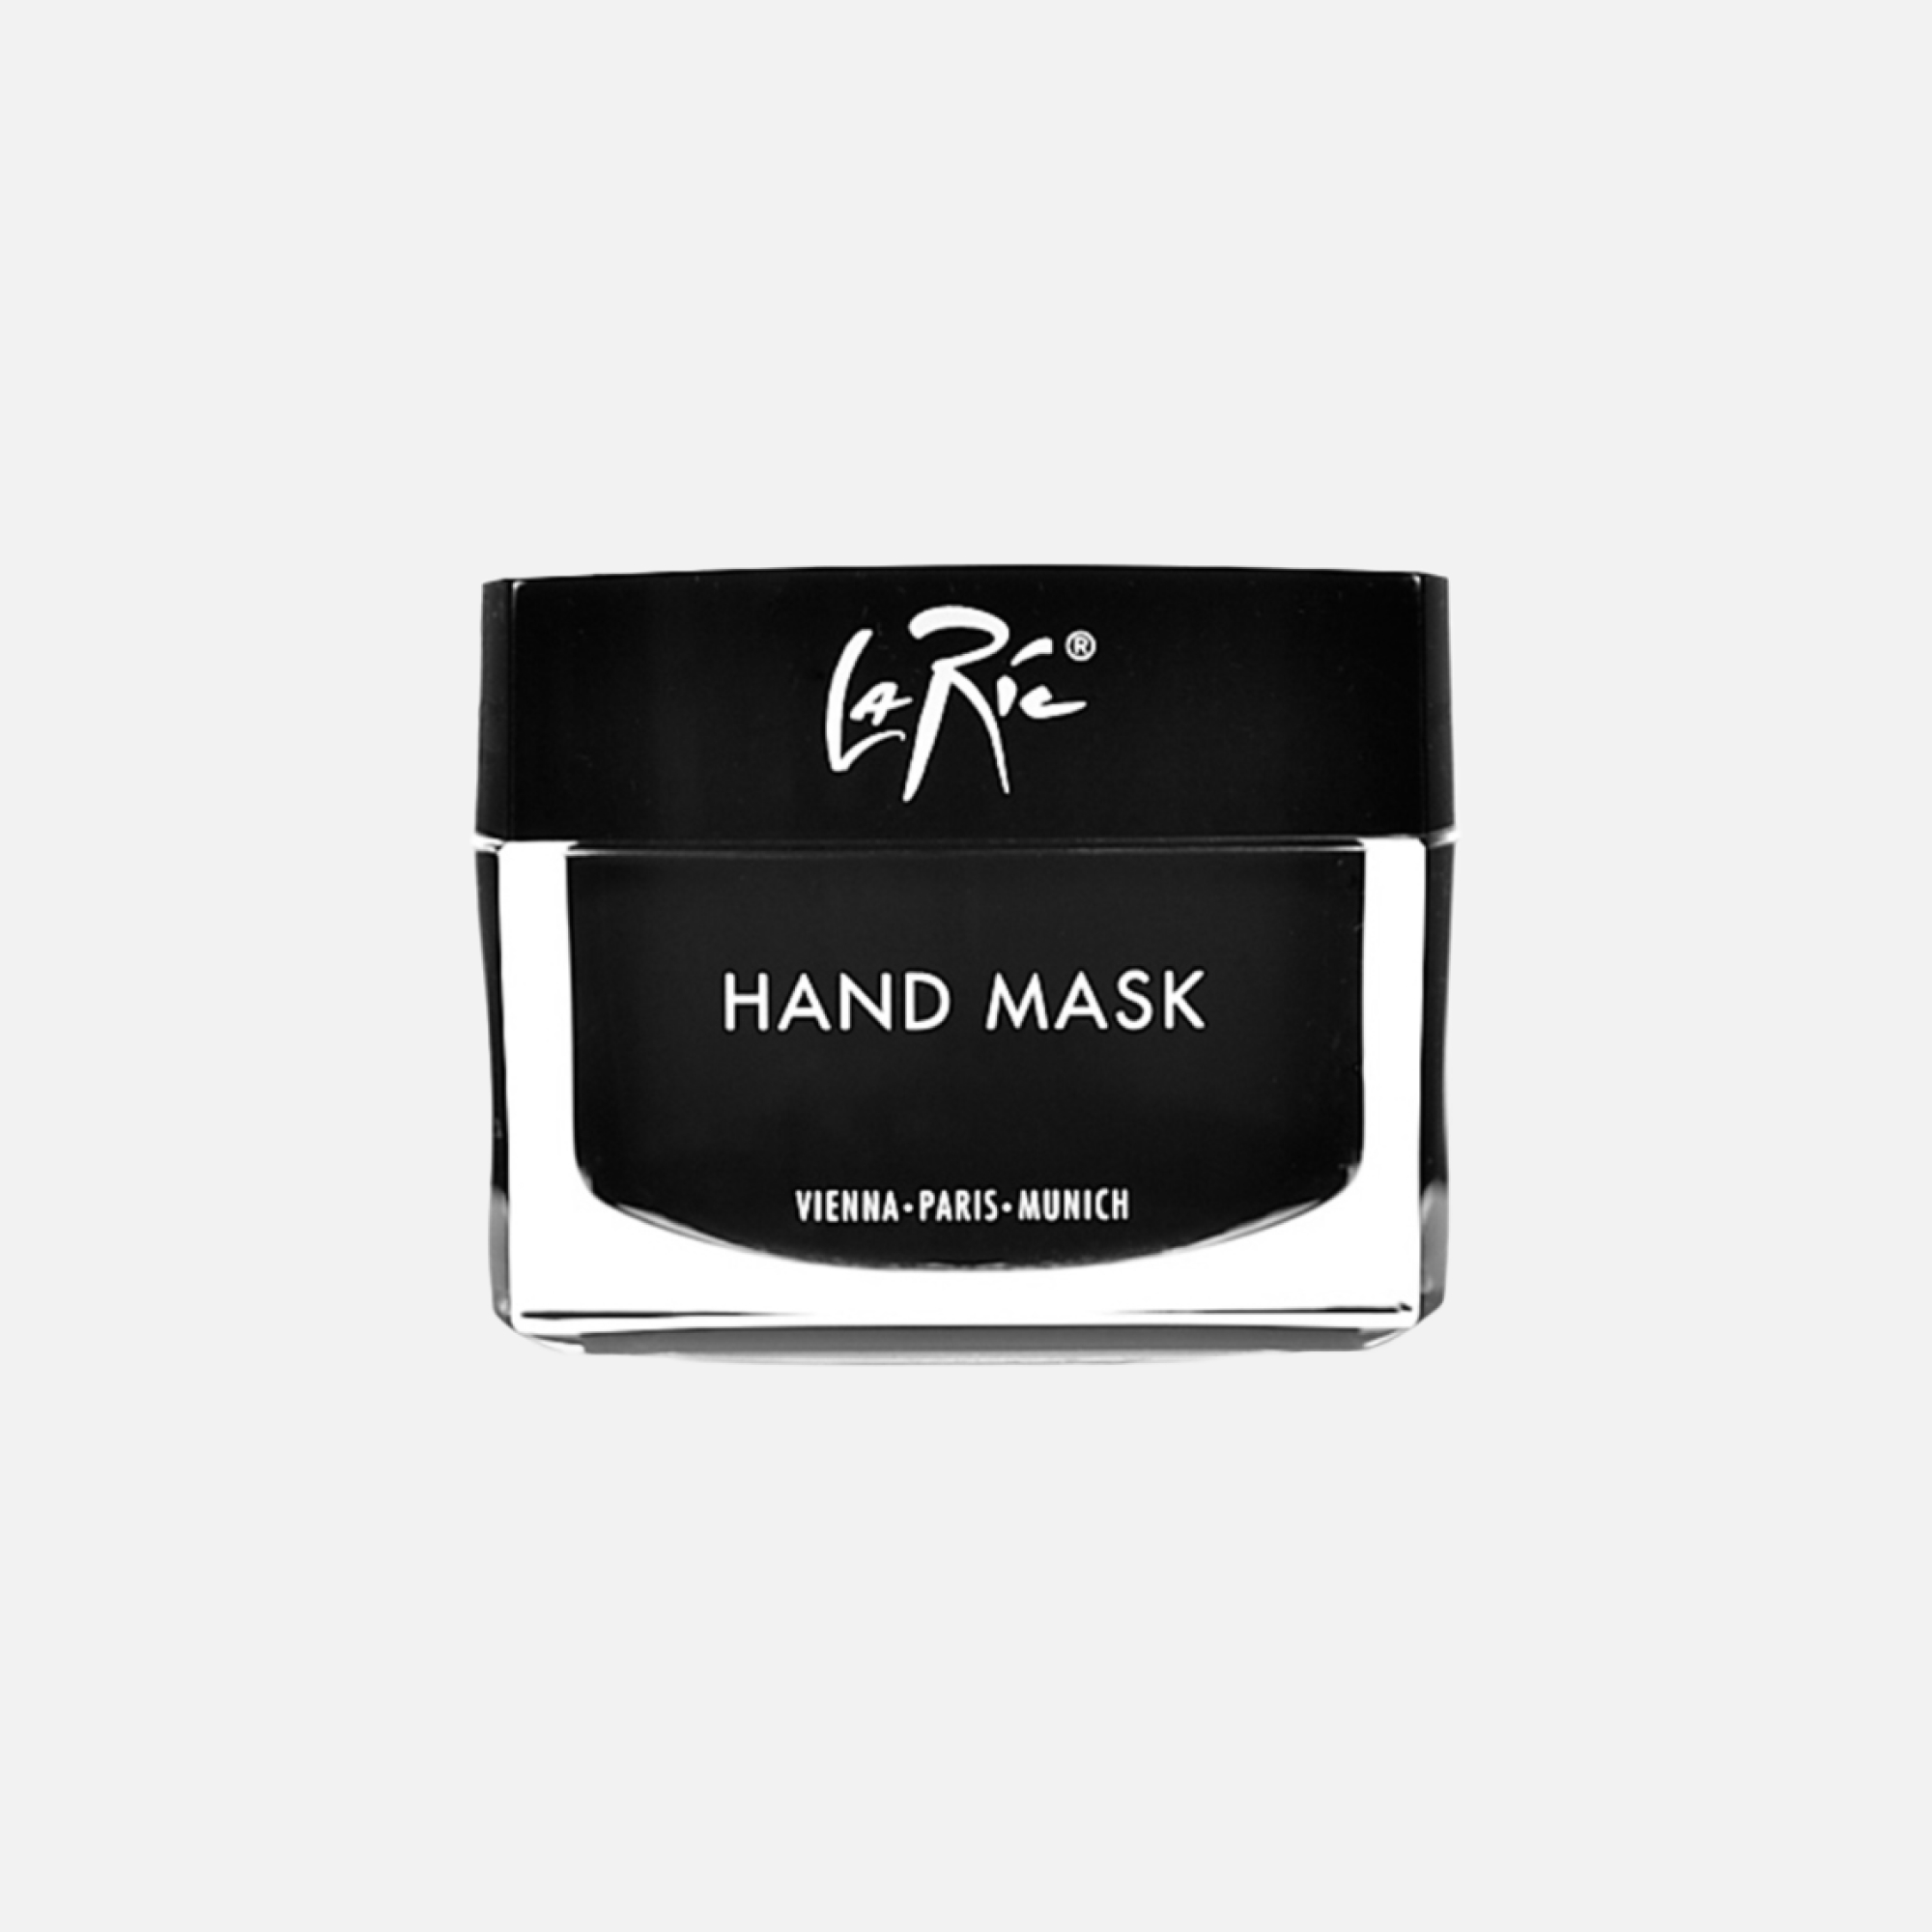 Зимние маски для рук, которые спасут сухую кожу (фото 1)